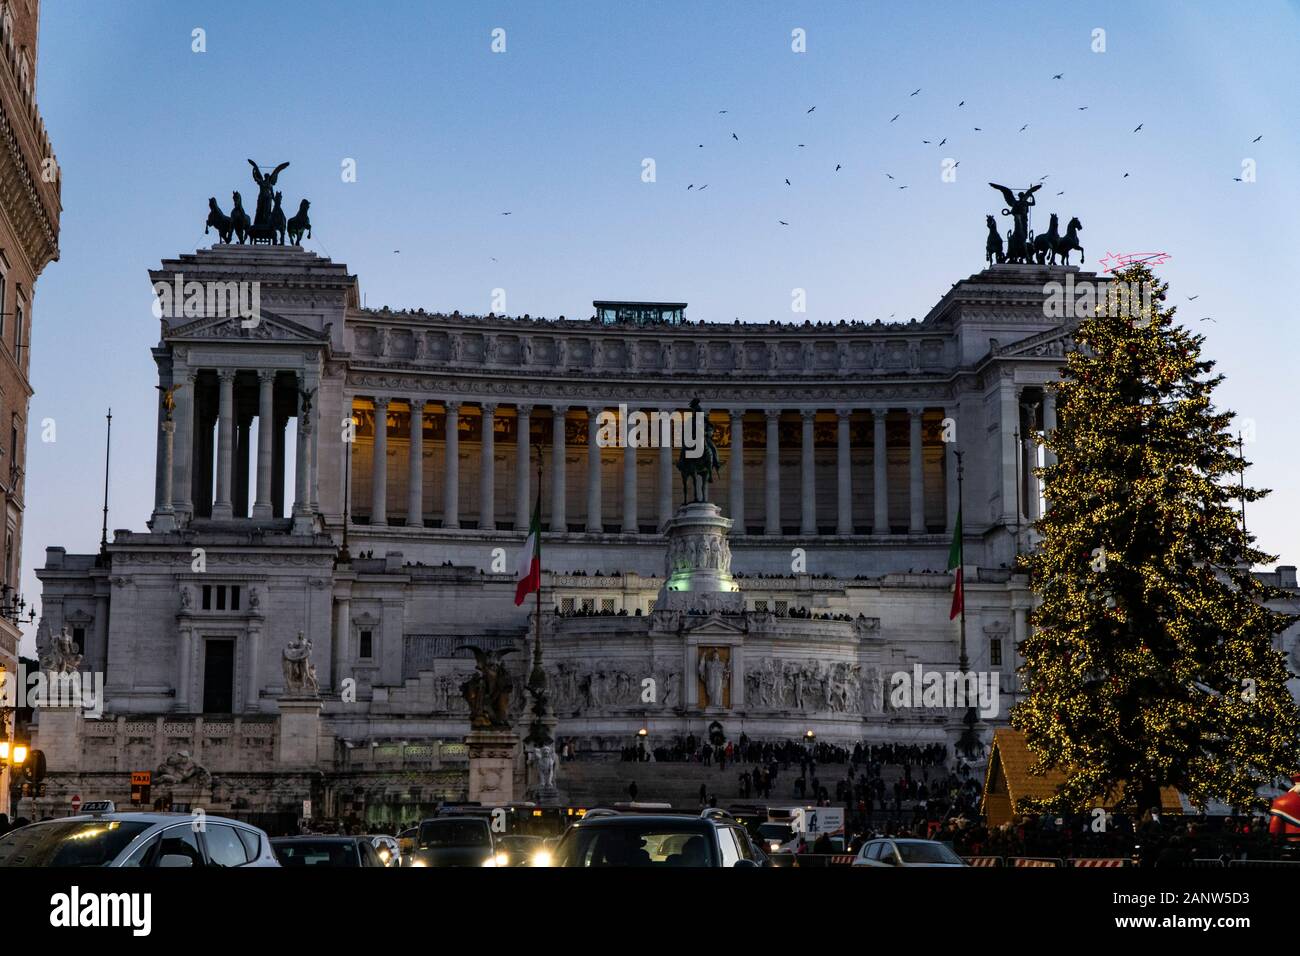 Altare della Patria in piazza venezia with christmas tree - Rome Italy Stock Photo